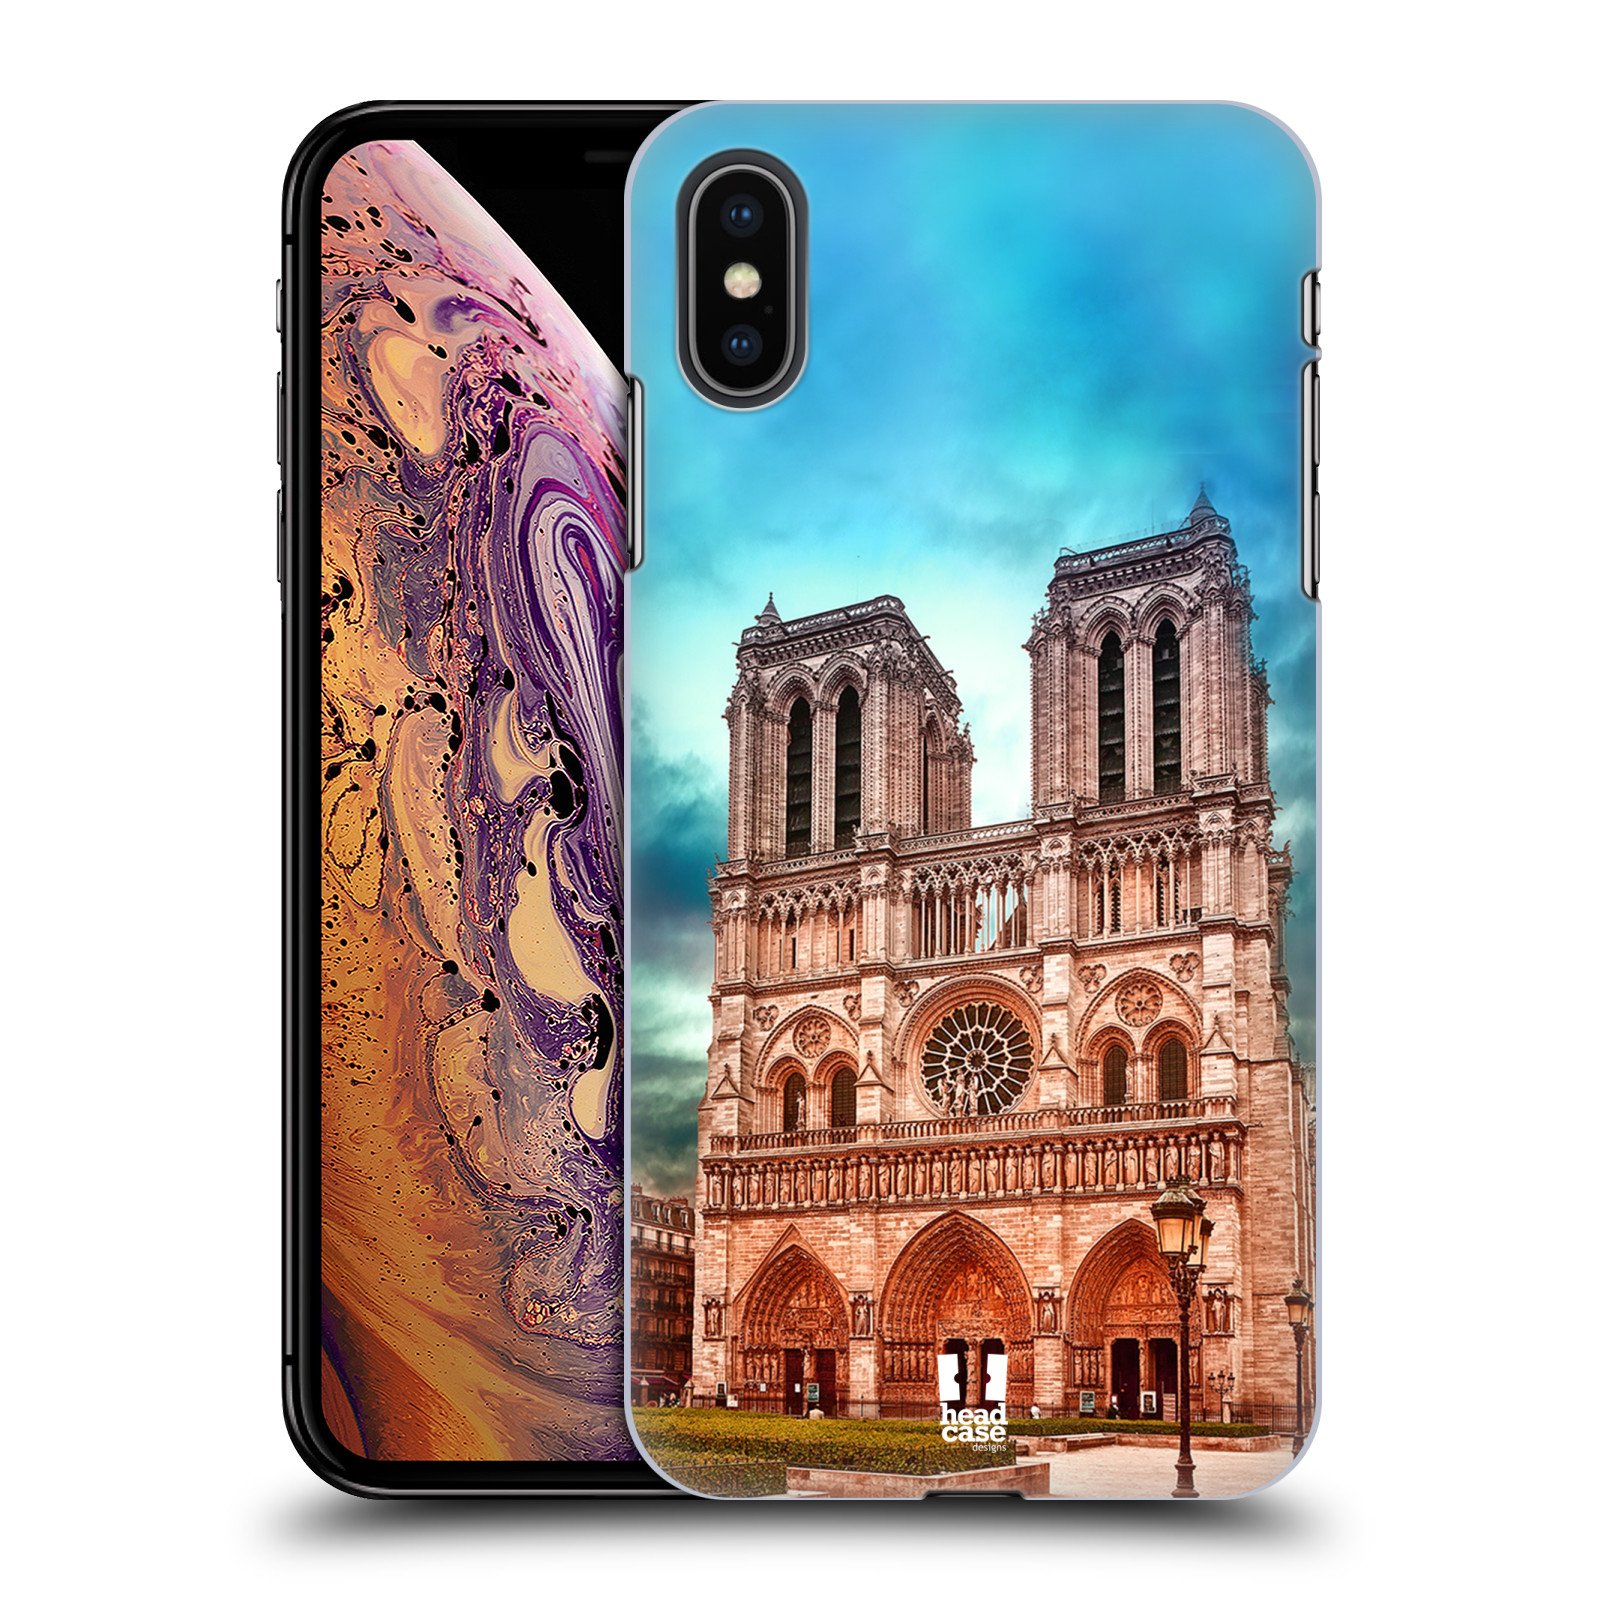 Pouzdro na mobil Apple Iphone XS MAX - HEAD CASE - historická místa katedrála Notre Dame